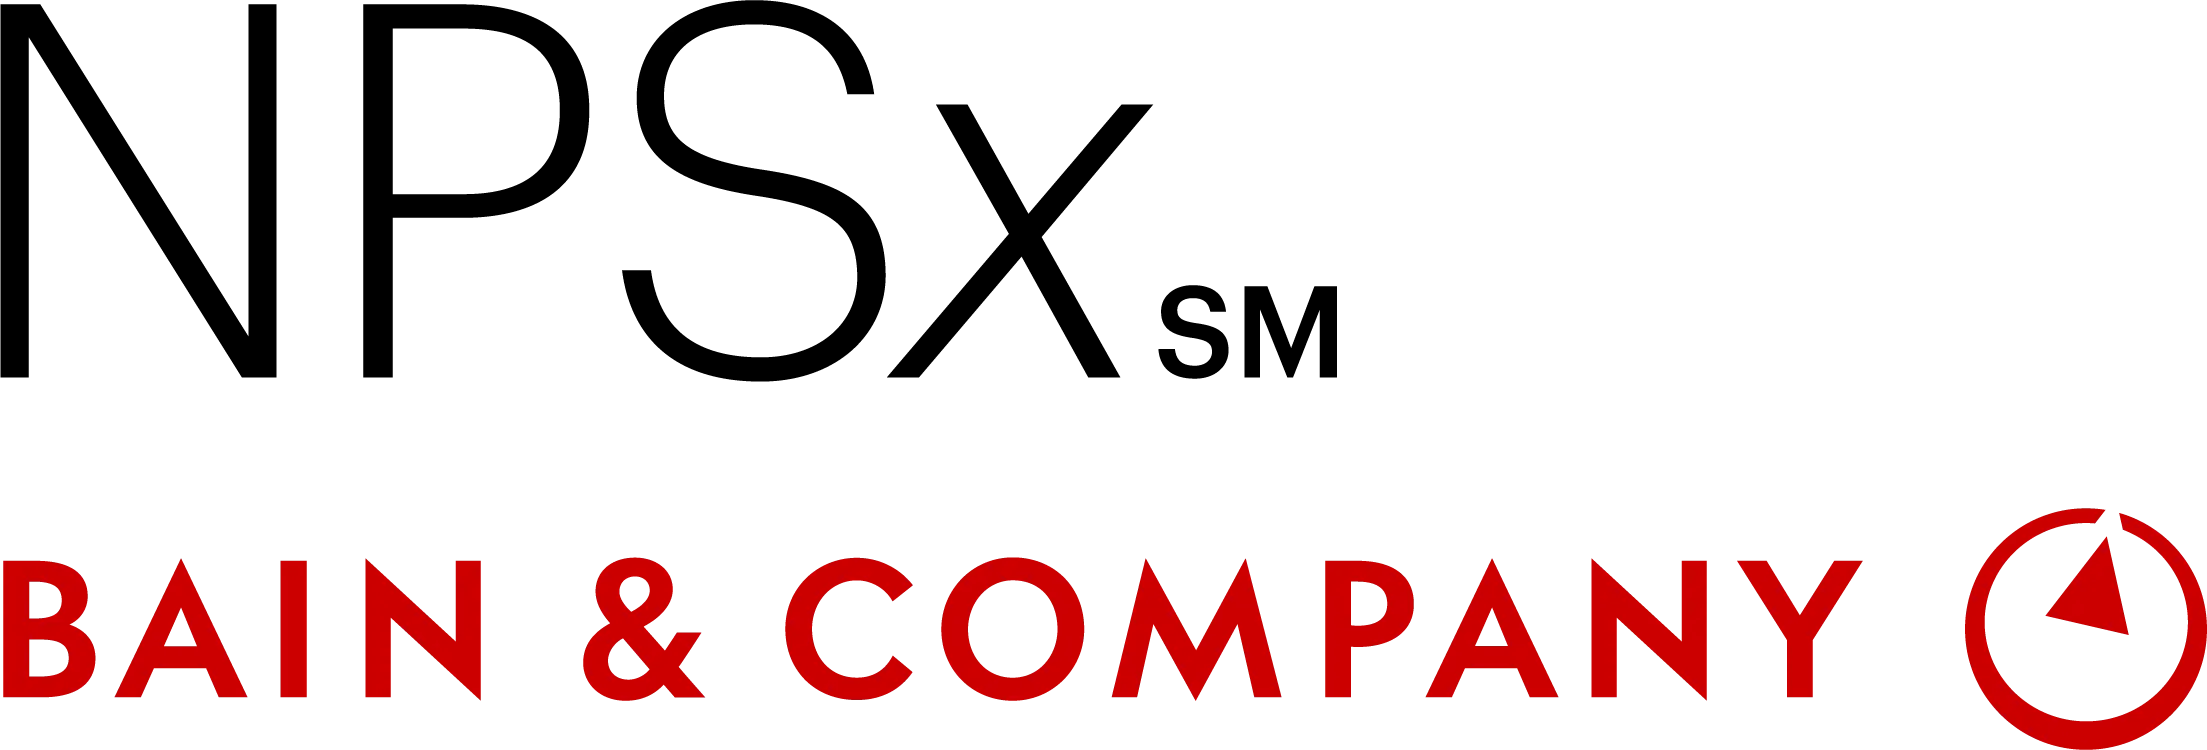 NPSx Bain & Company logo